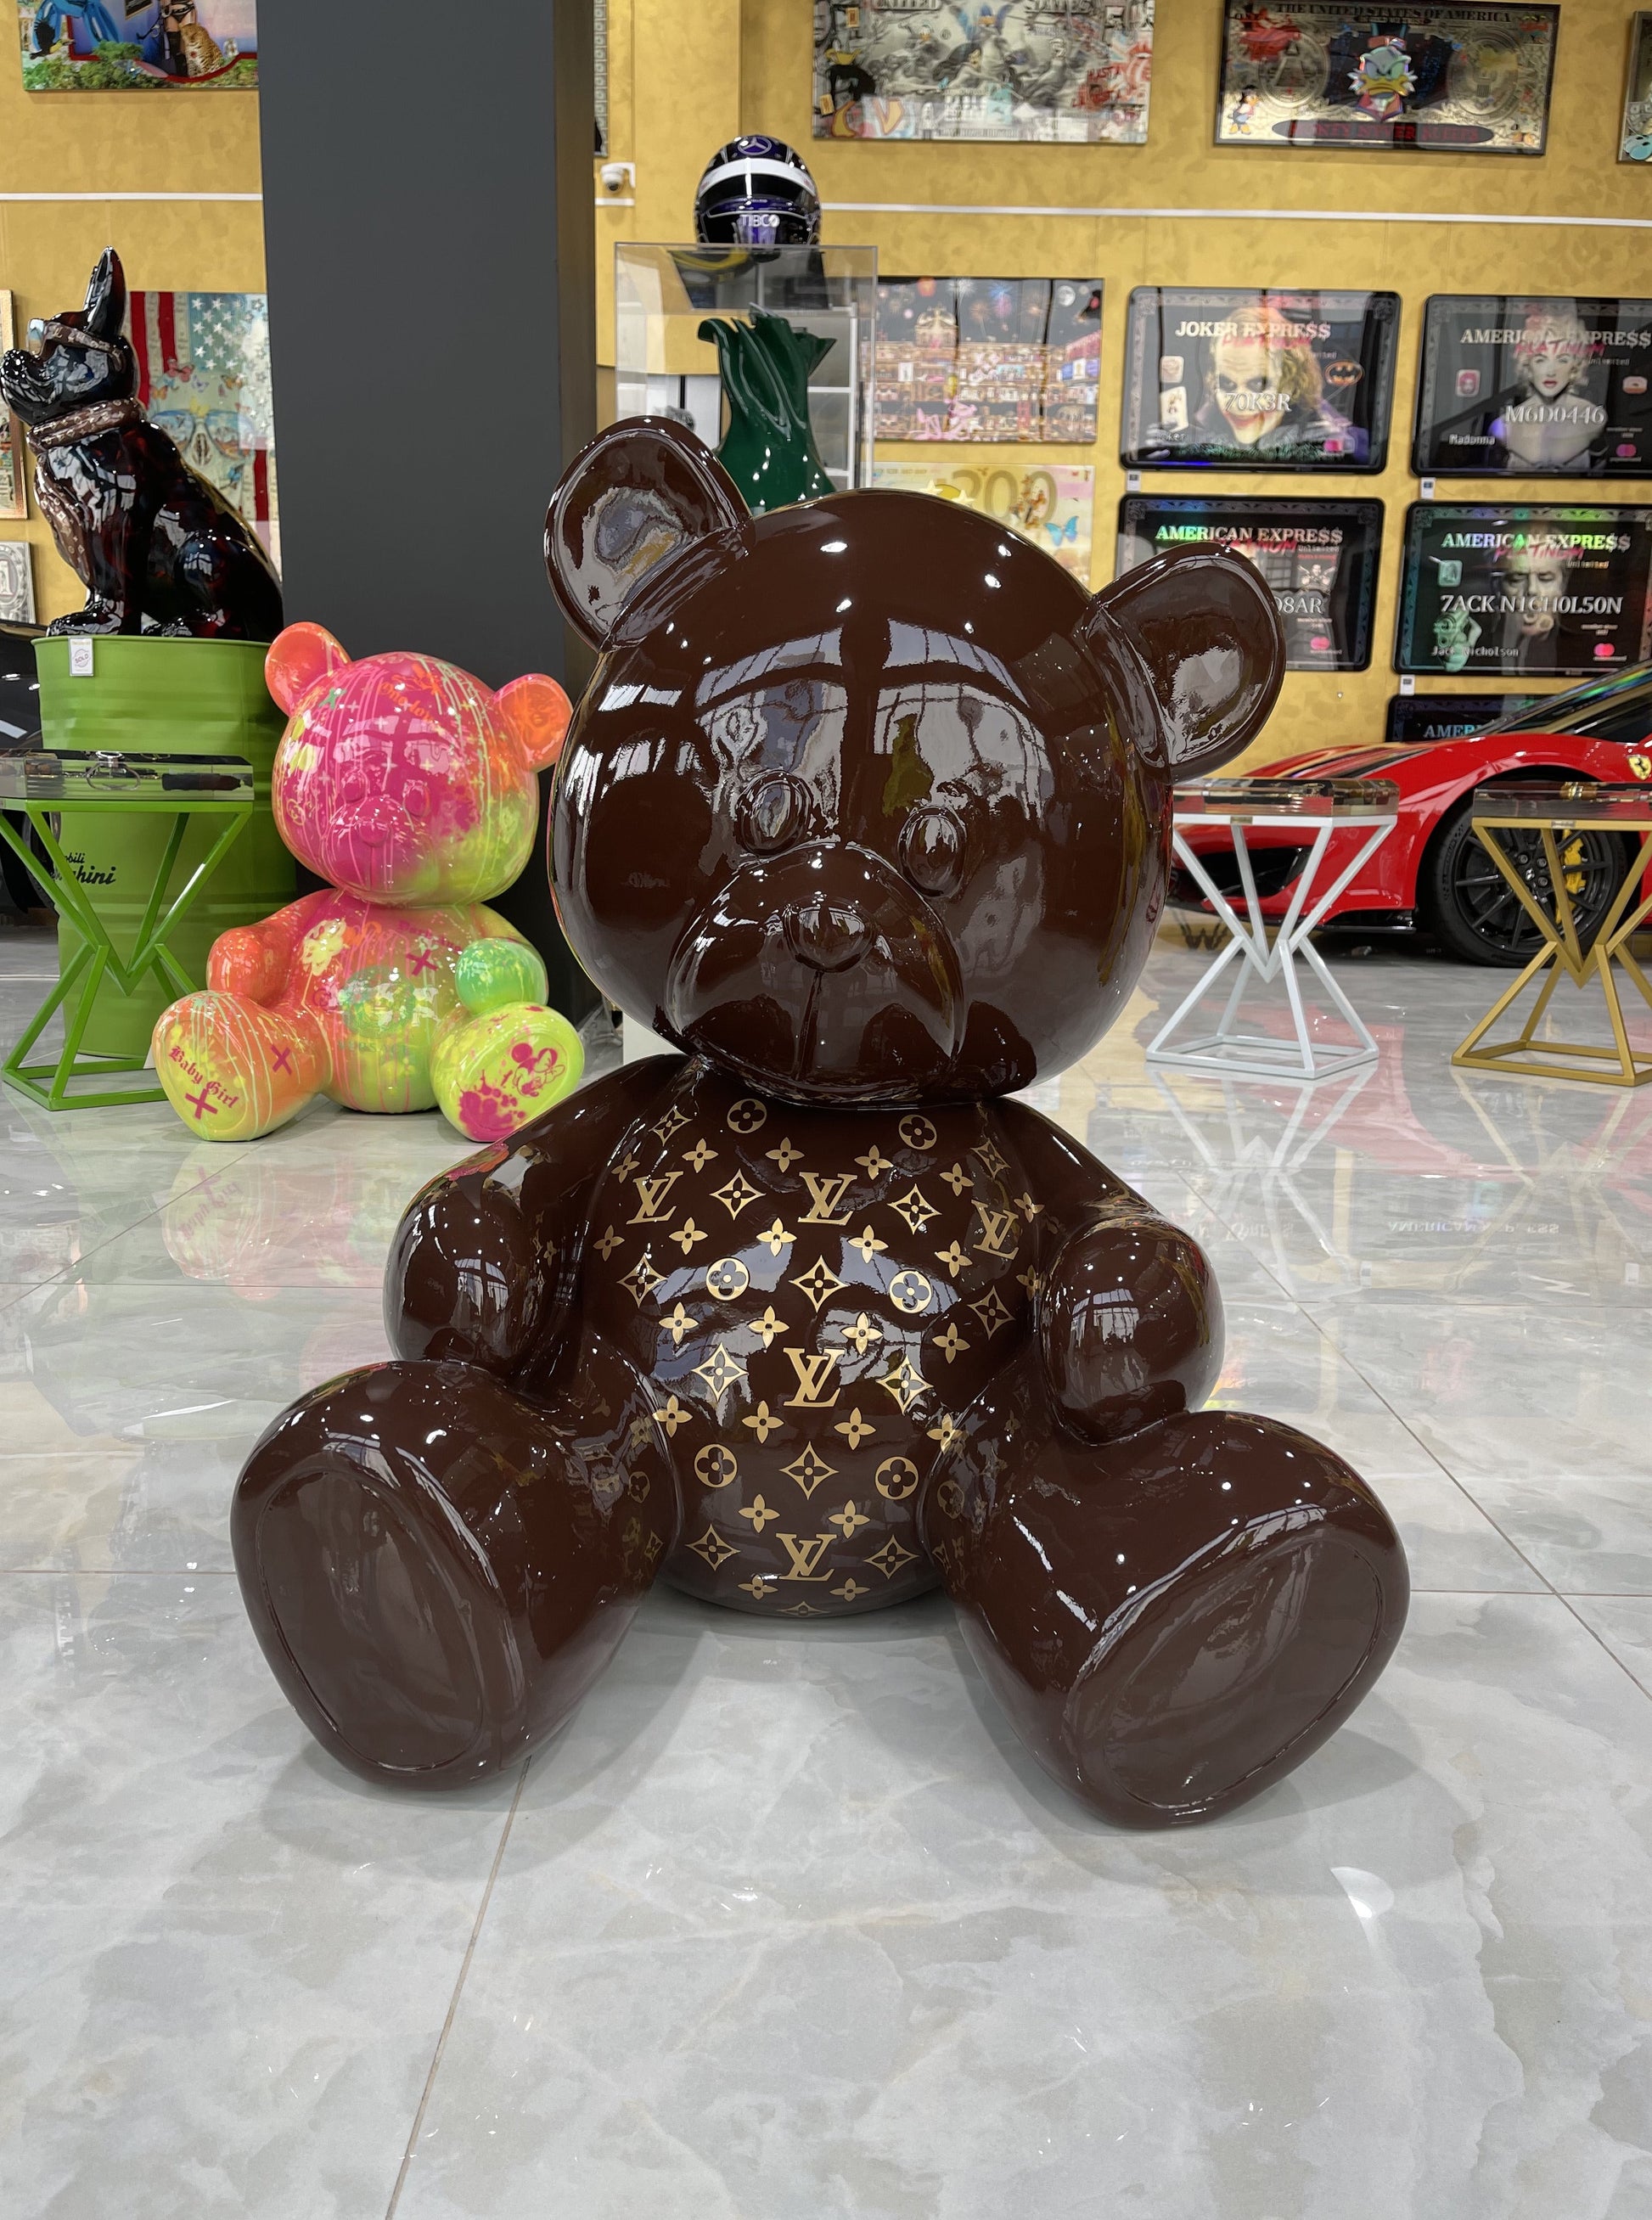 GHOST ART, LV Medium Bear (2021), Available for Sale